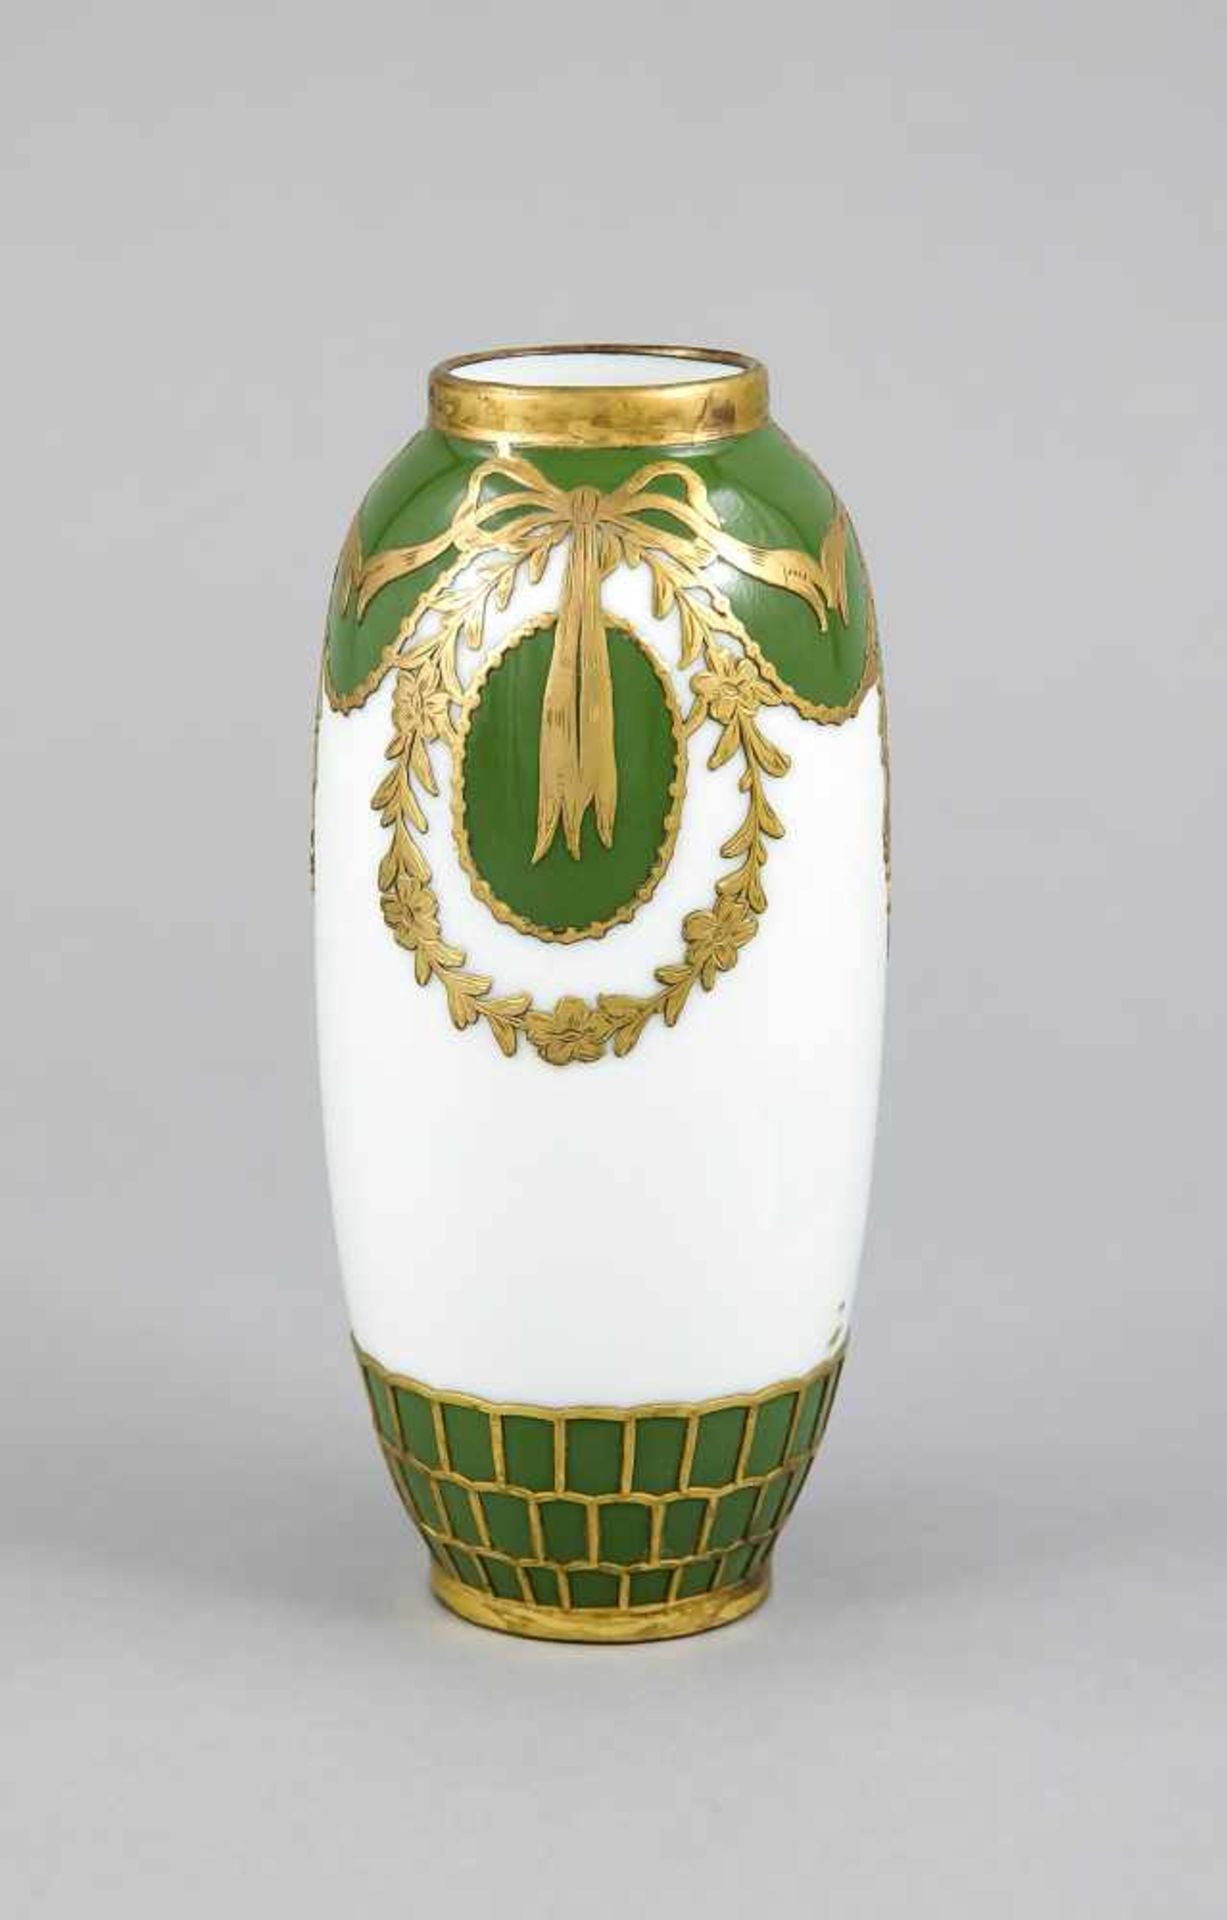 Vase, um 1900, ovoide Form, weiß, tlw. grüner Fond, umlaufende Metallmontage, H. 18 cm